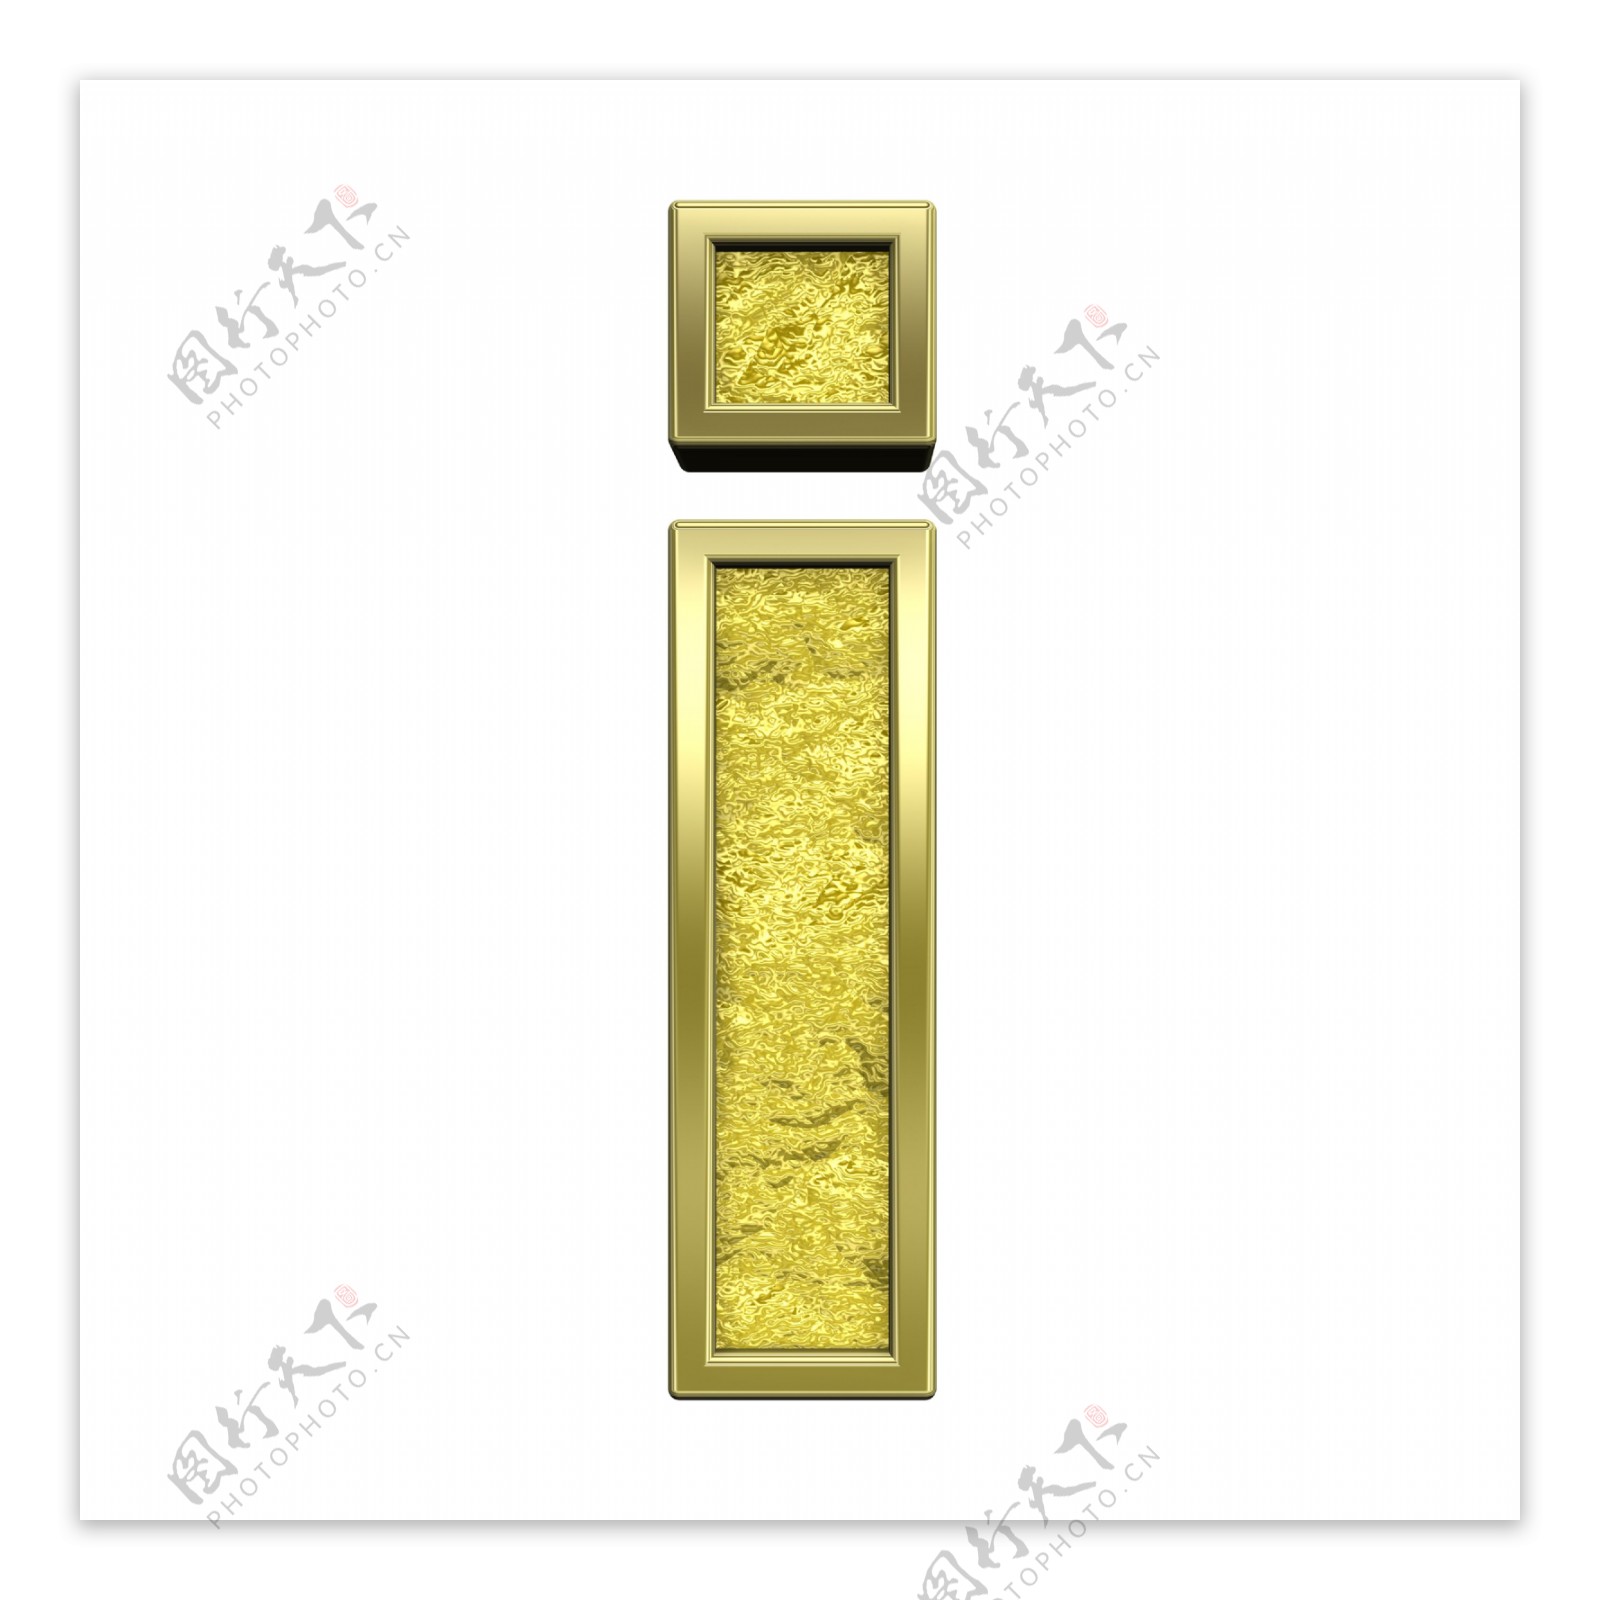 一个小写字母的字符集黄金铸造